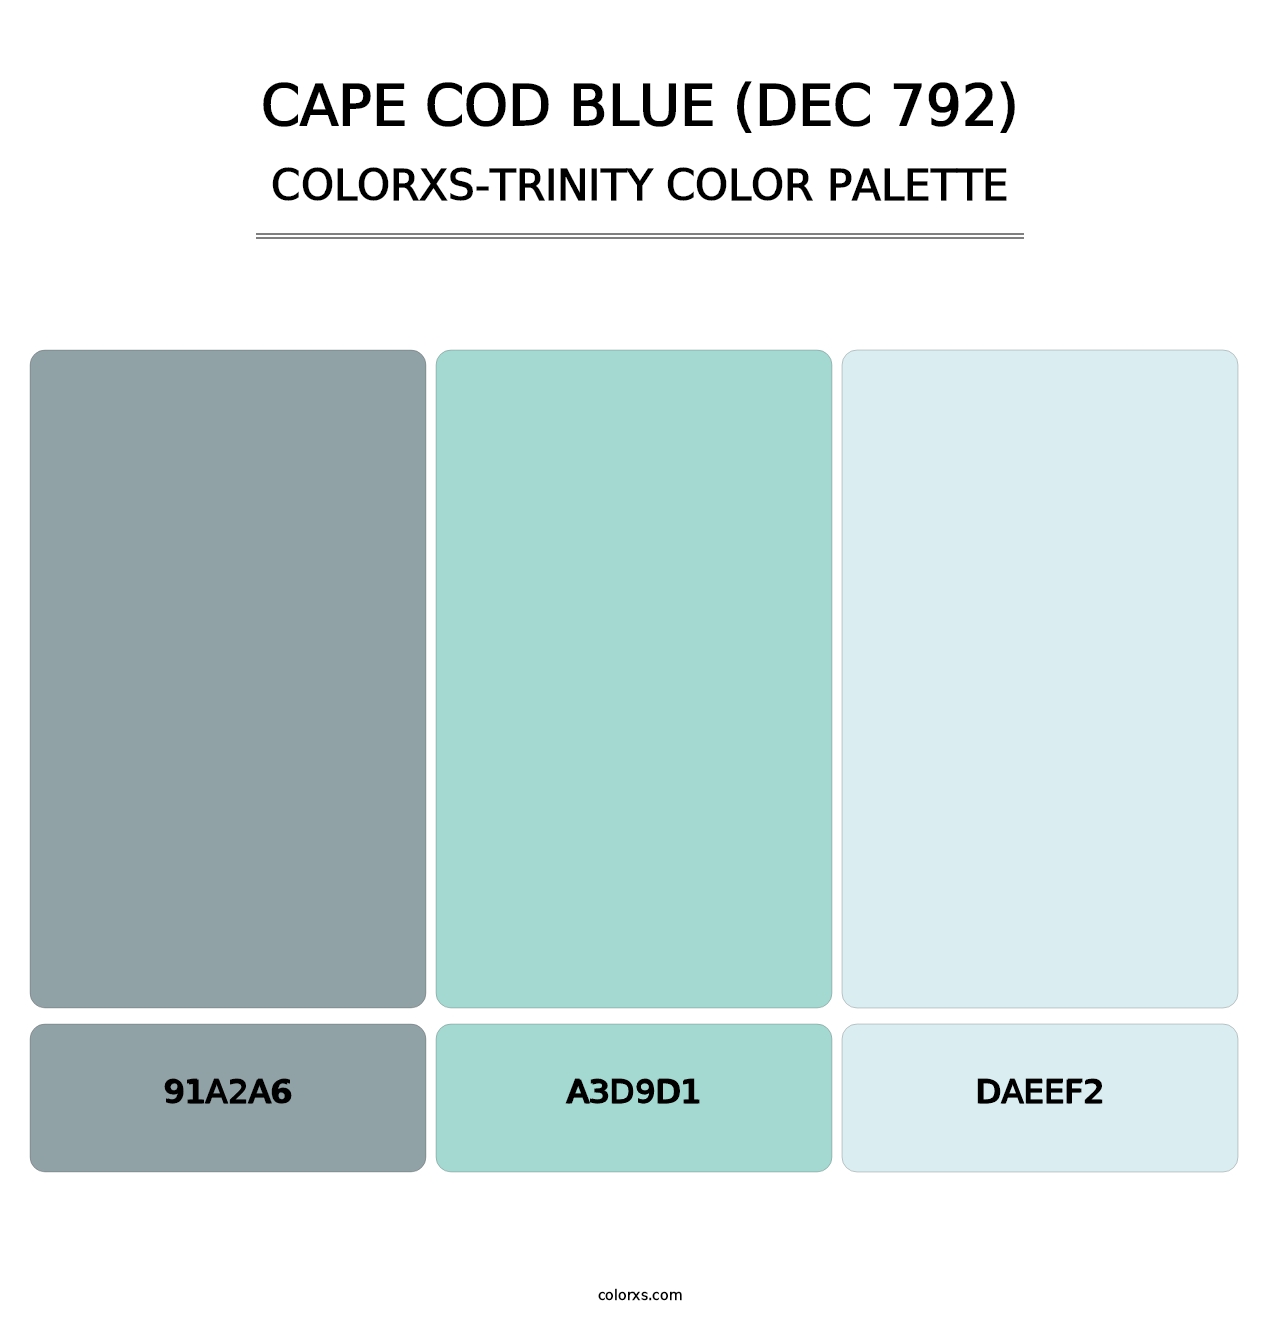 Cape Cod Blue (DEC 792) - Colorxs Trinity Palette